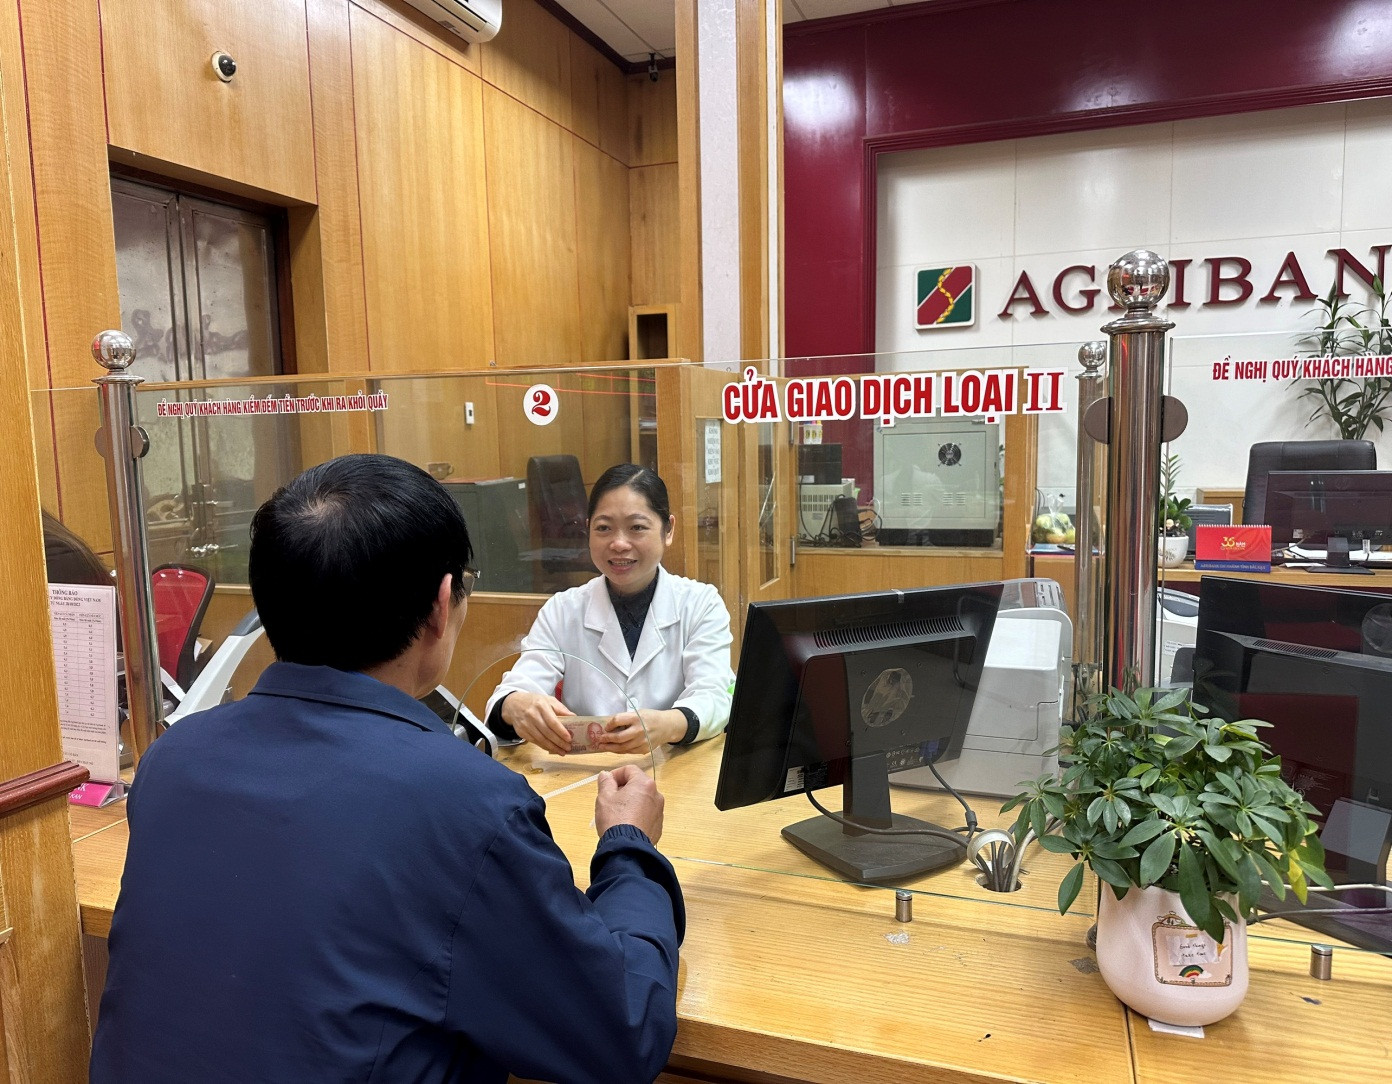 Chị Nguyễn Thị Nhung, Agribank chi nhánh tỉnh Bắc Kạn trả lại số tiền thừa cho khách hàng hơn 2 tỷ đồng năm 2022.